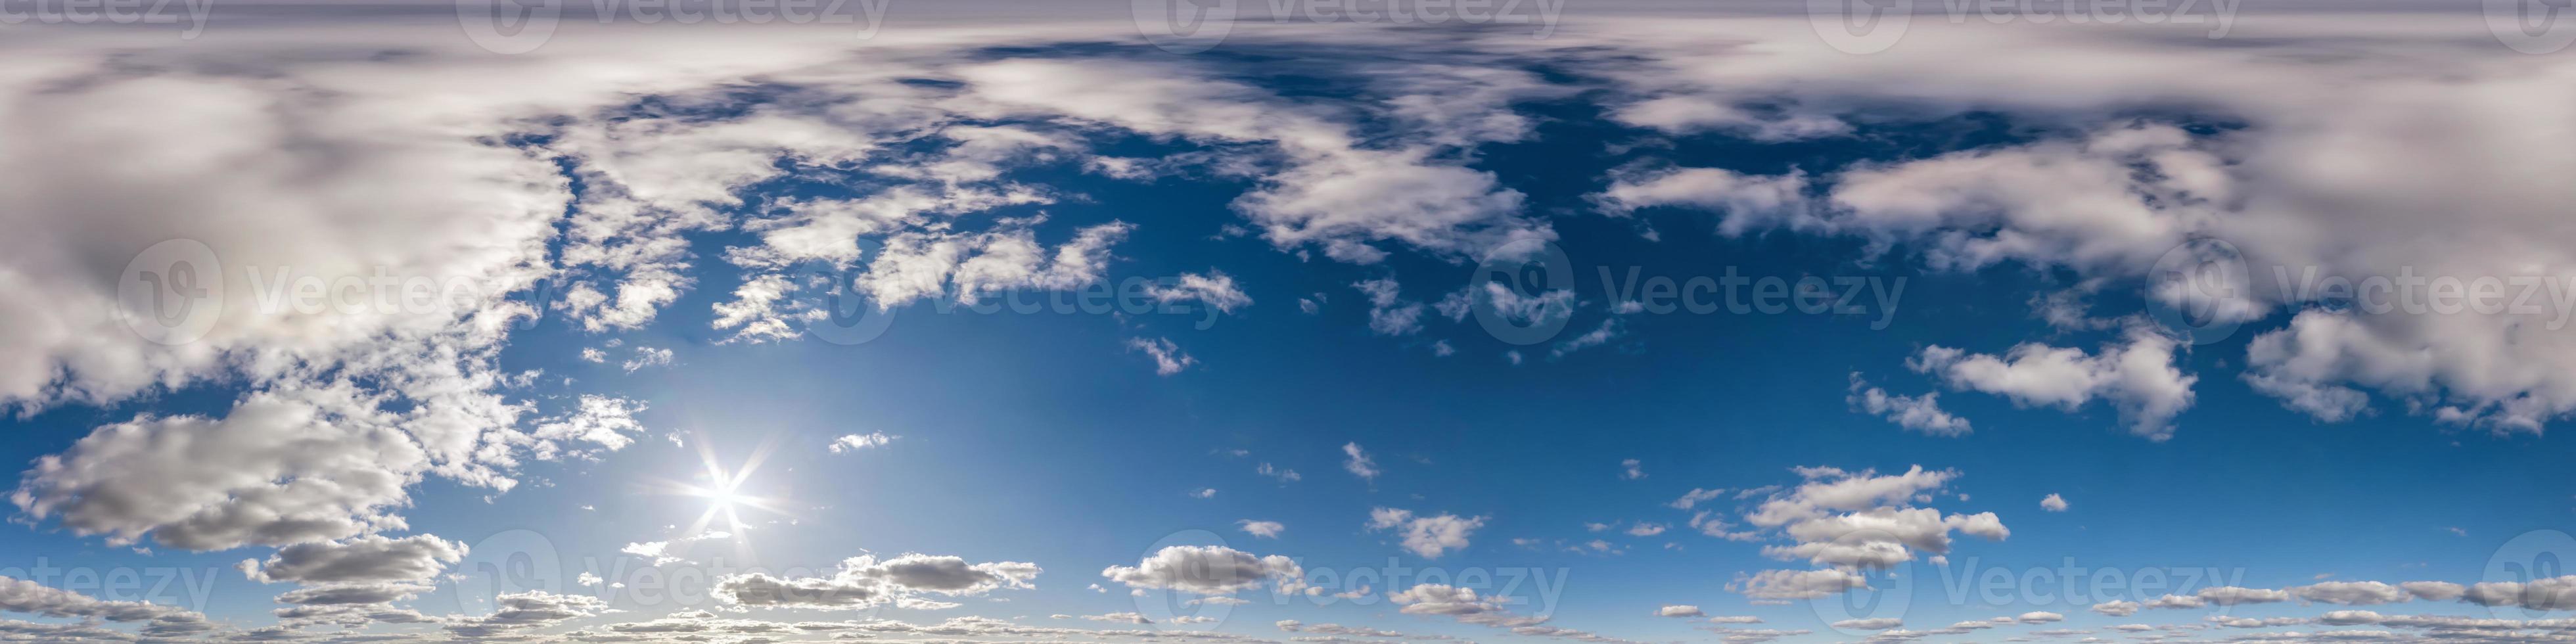 céu azul claro hdri 360 panorama em projeção perfeita com zênite para uso  em gráficos 3D